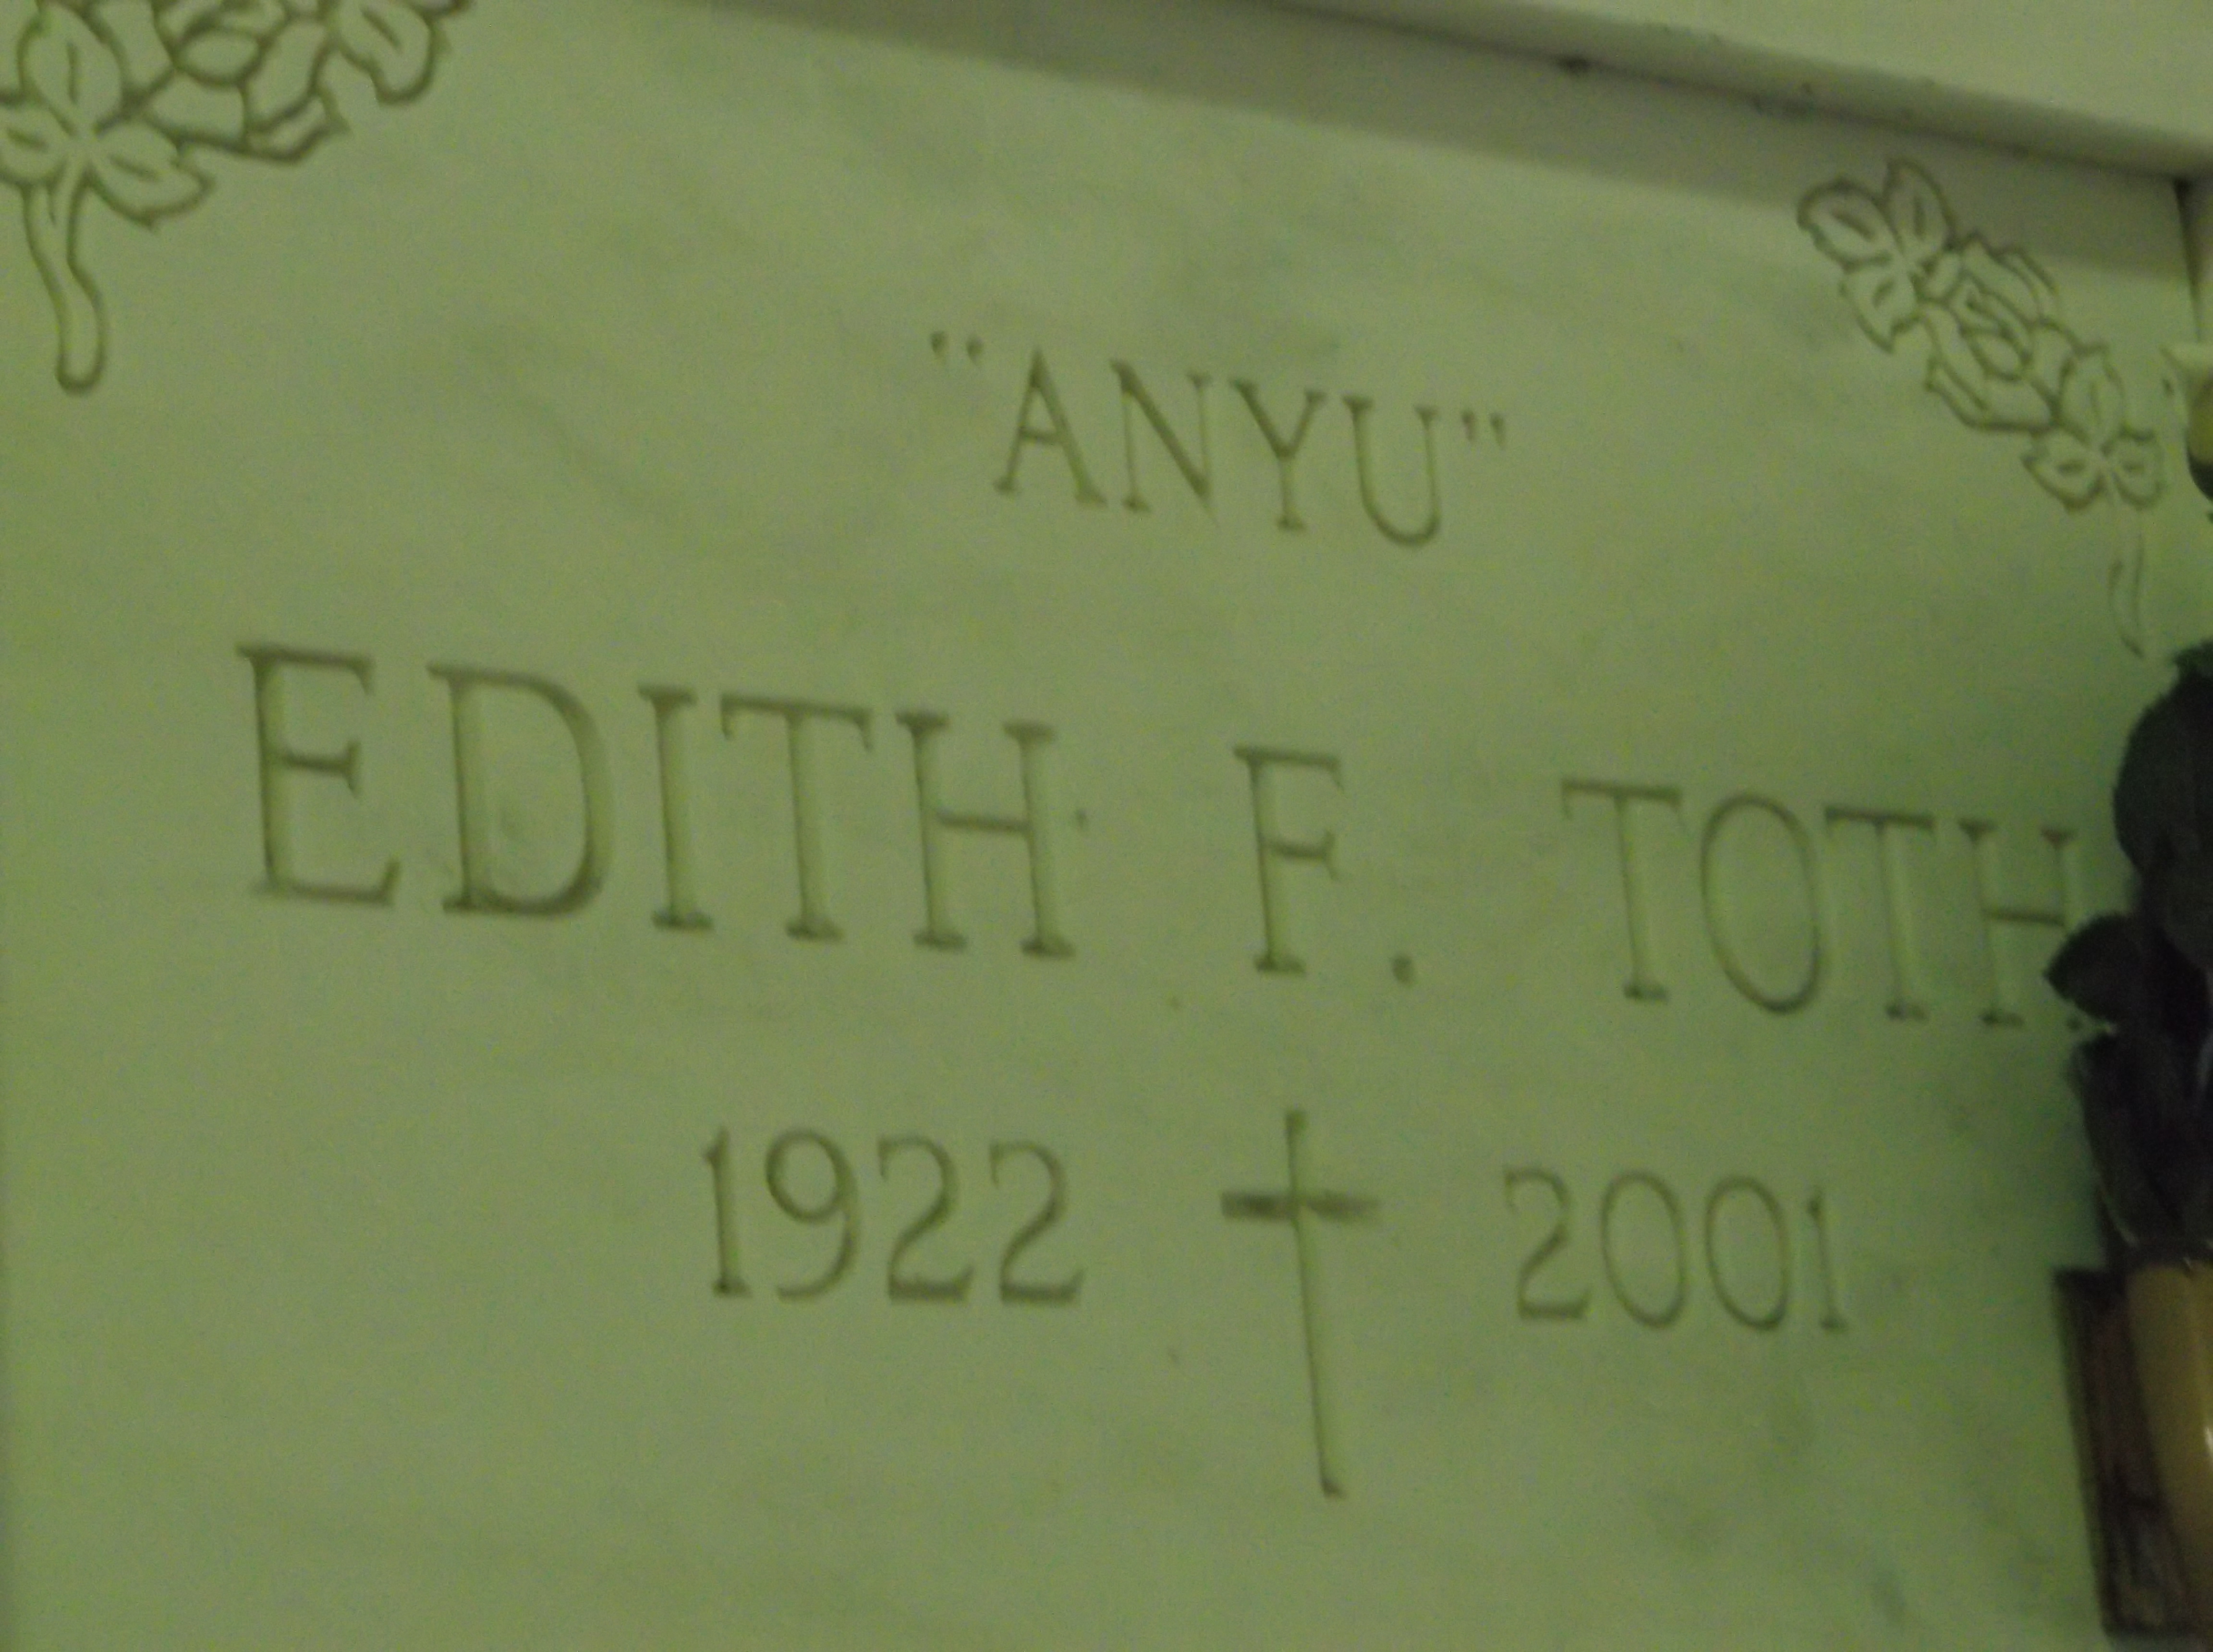 Edith F "Anyu" Toth